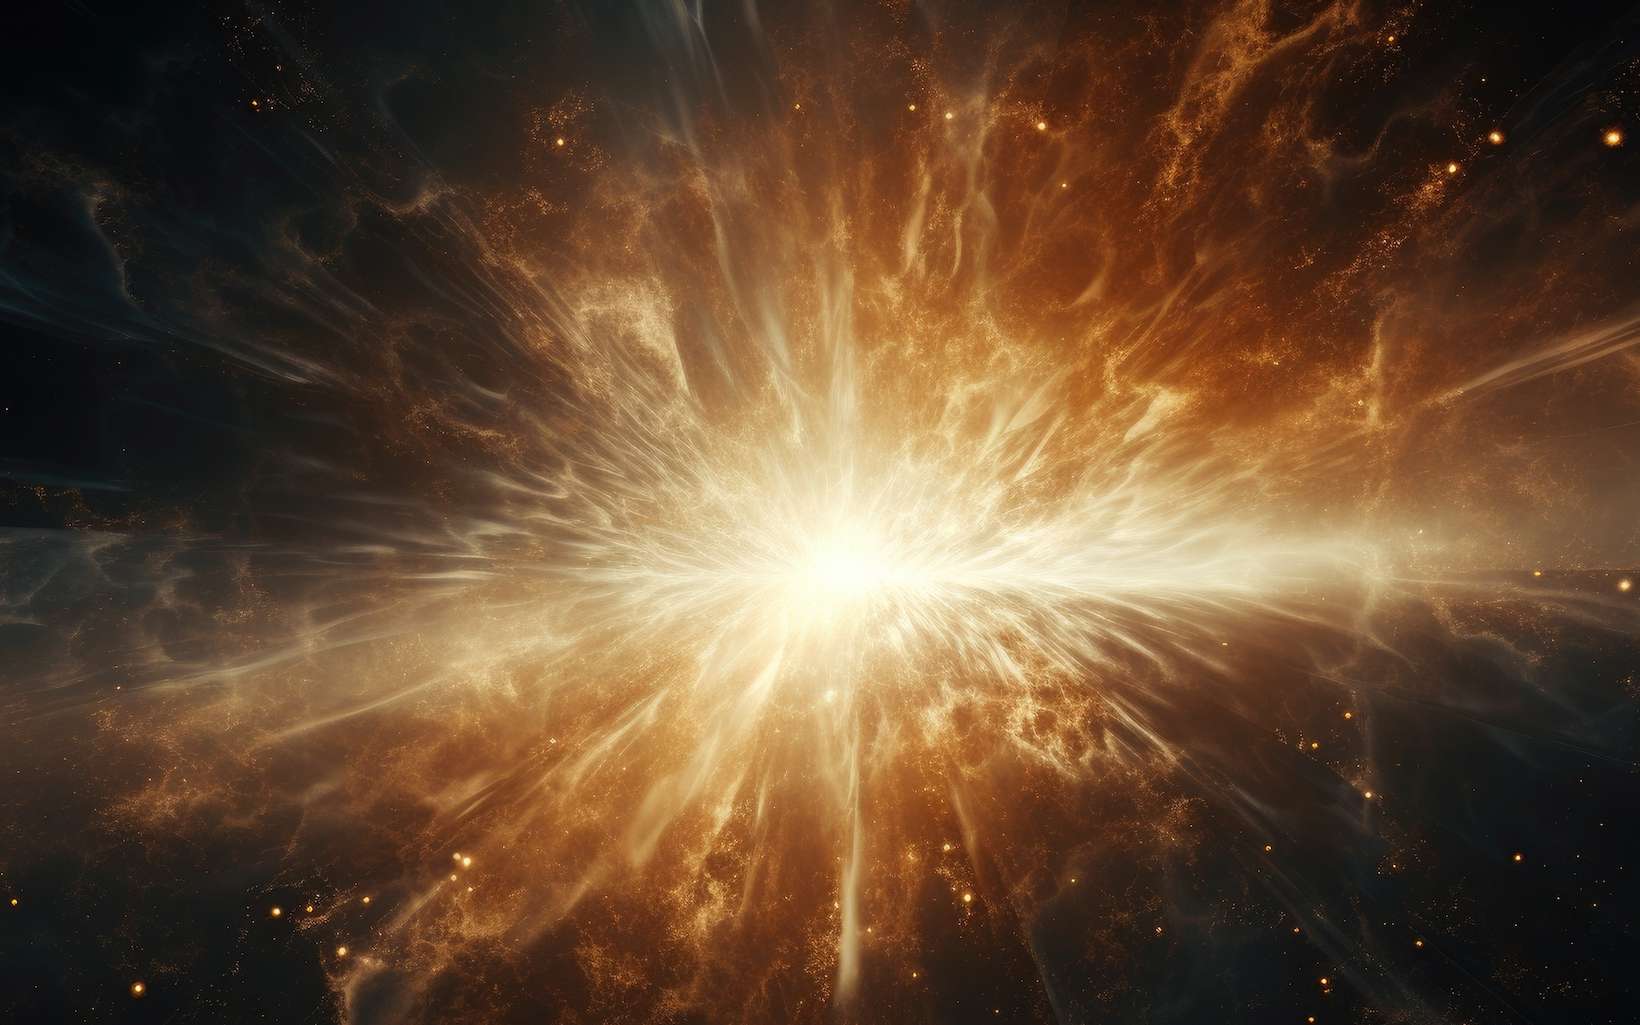 Le télescope James-Webb peut-il remonter jusqu'au début des temps et observer le Big Bang ?